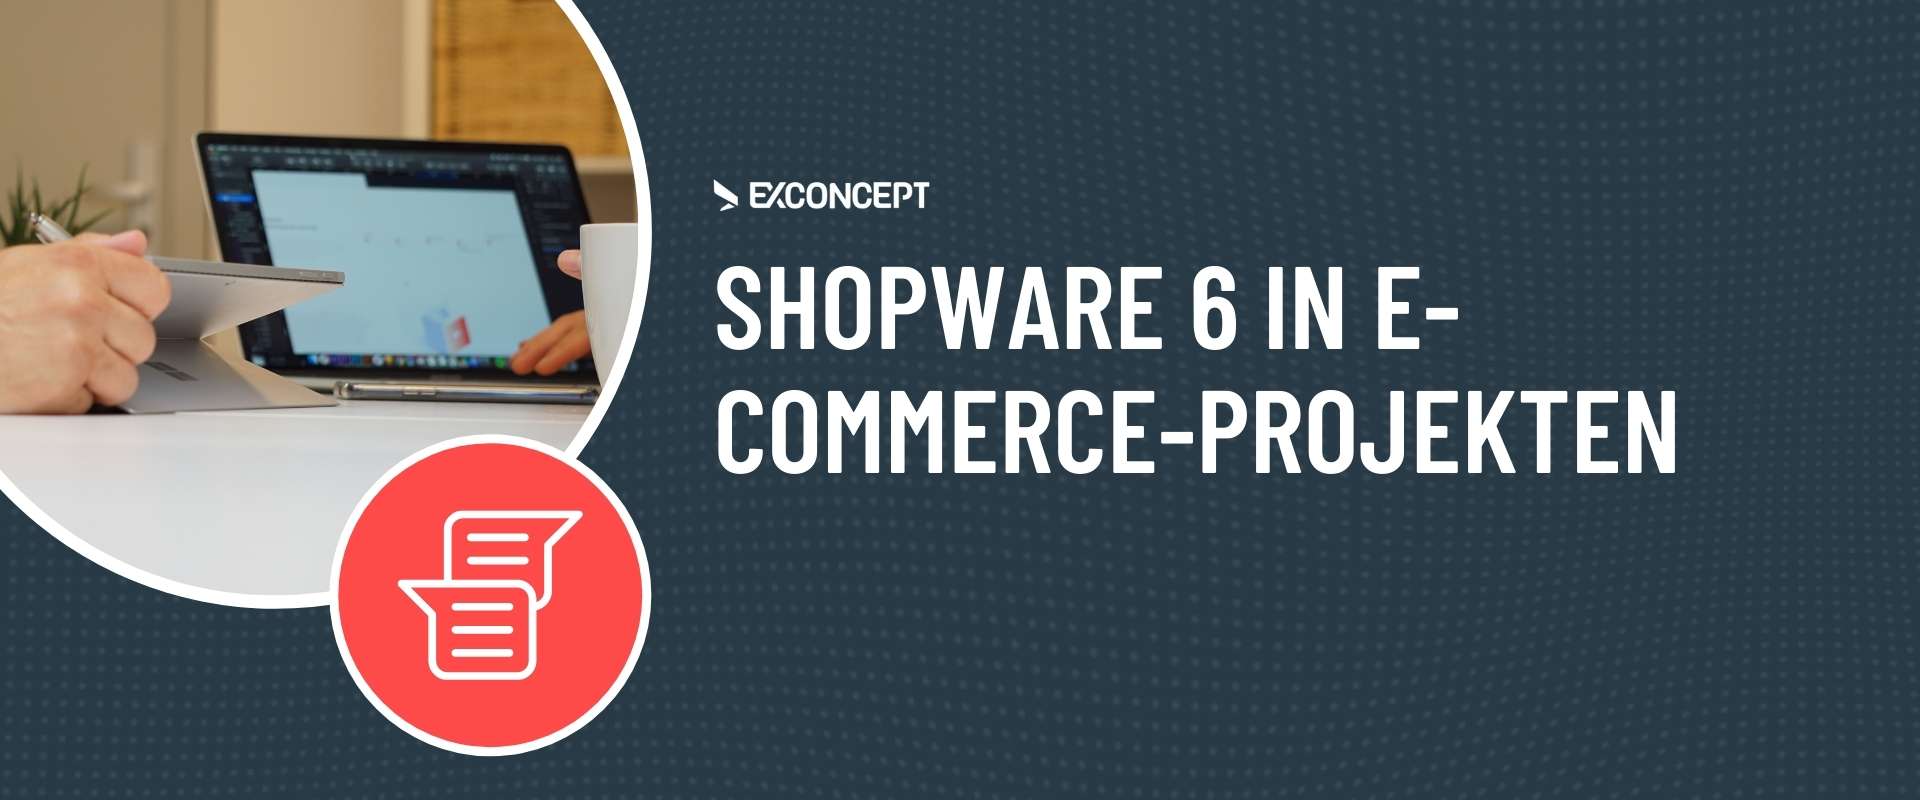 Vorteile von Shopware 6 für E-Commerce-Projekte Artikelvorschau